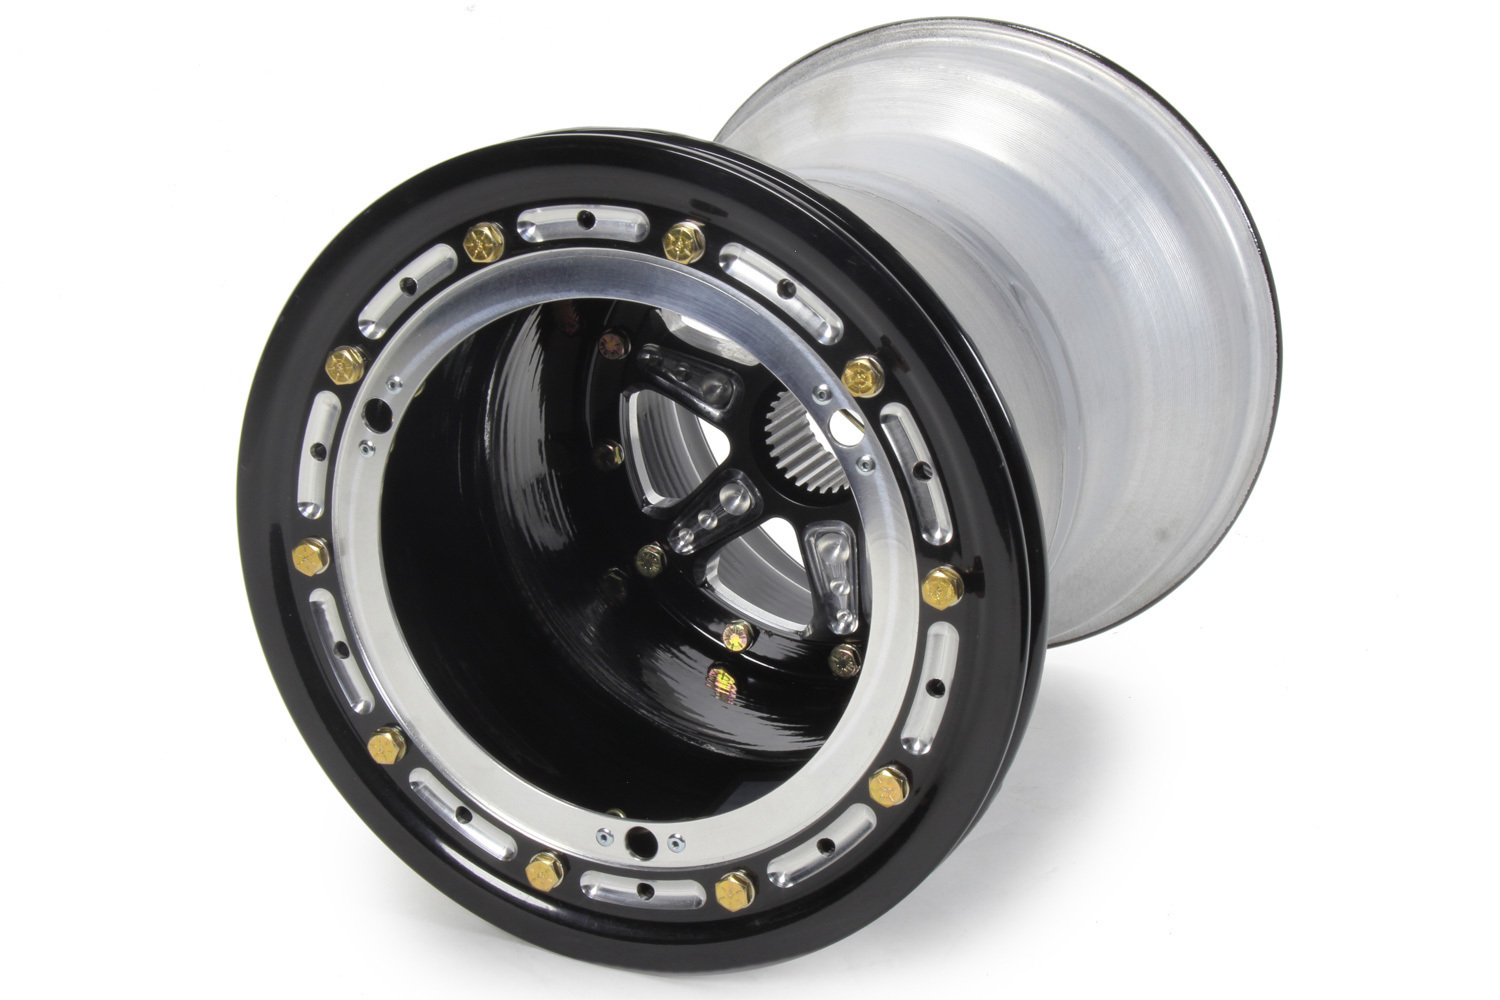 Keizer Aluminum Wheels 10136SPBLB Wheel, 10 x 13 in, 6.000 in Backspace, 27 Spline, Aluminum, Black Anodized, Each